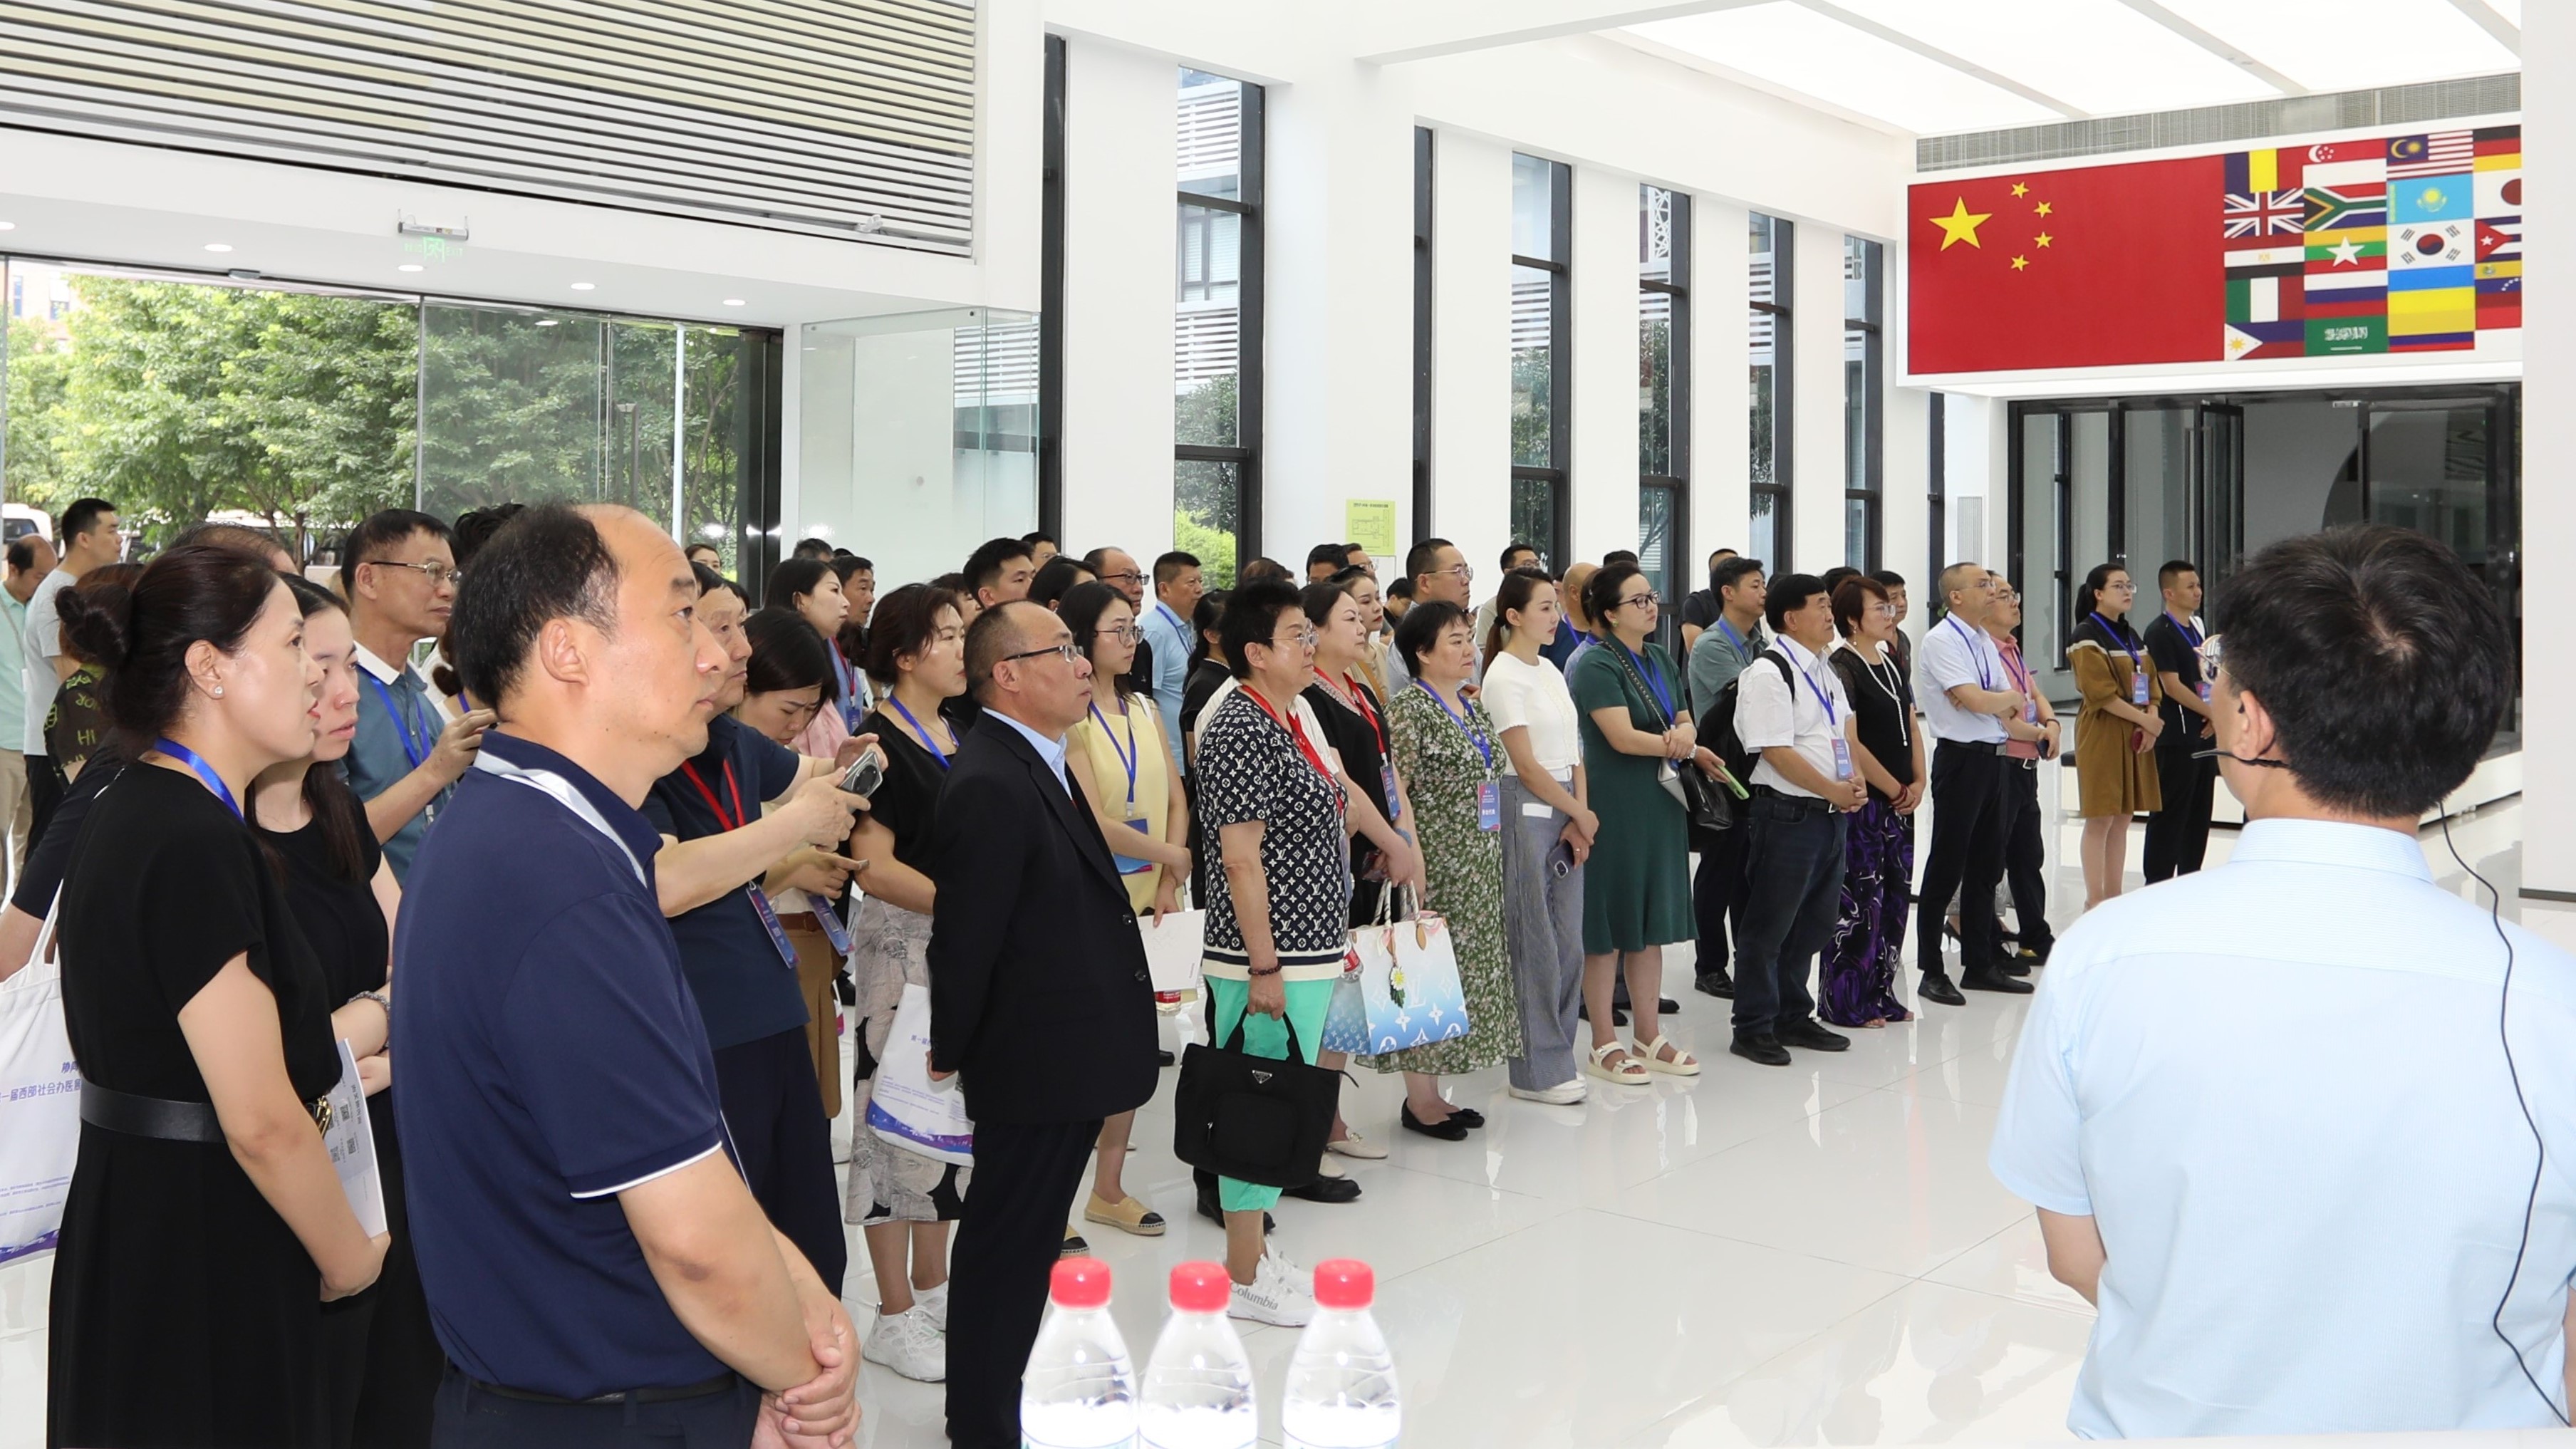 西部社会办医博览会组委会邀请127名嘉宾组织考察重庆海扶医疗